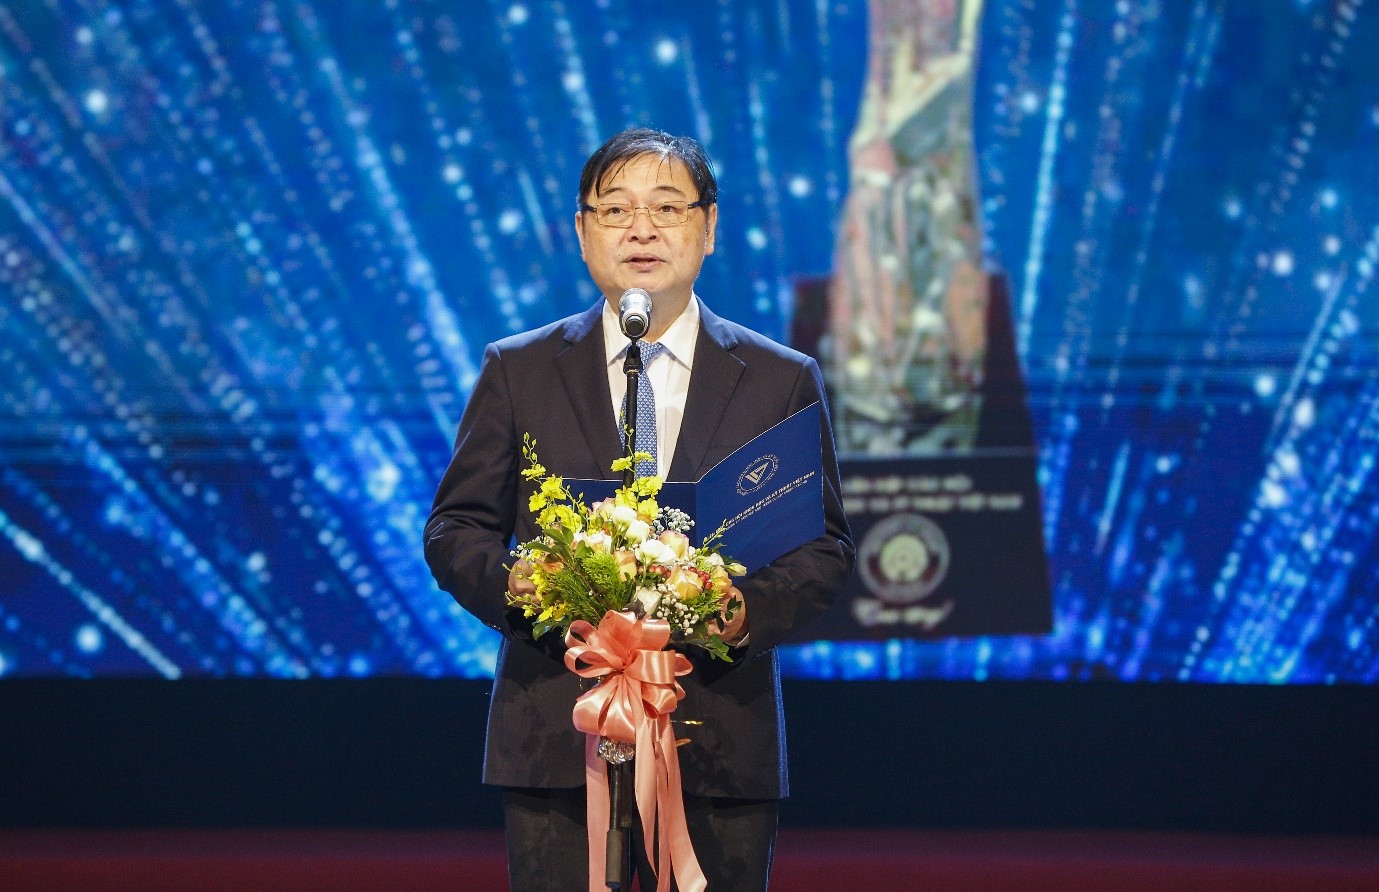 Ông Phan Xuân Dũng, Chủ tịch Liên hiệp các Hội khoa học và Kỹ thuật Việt Nam phát biểu tại chương trình Truyền hình trực tiếp 15/7/2002 trên kênh VTV2.